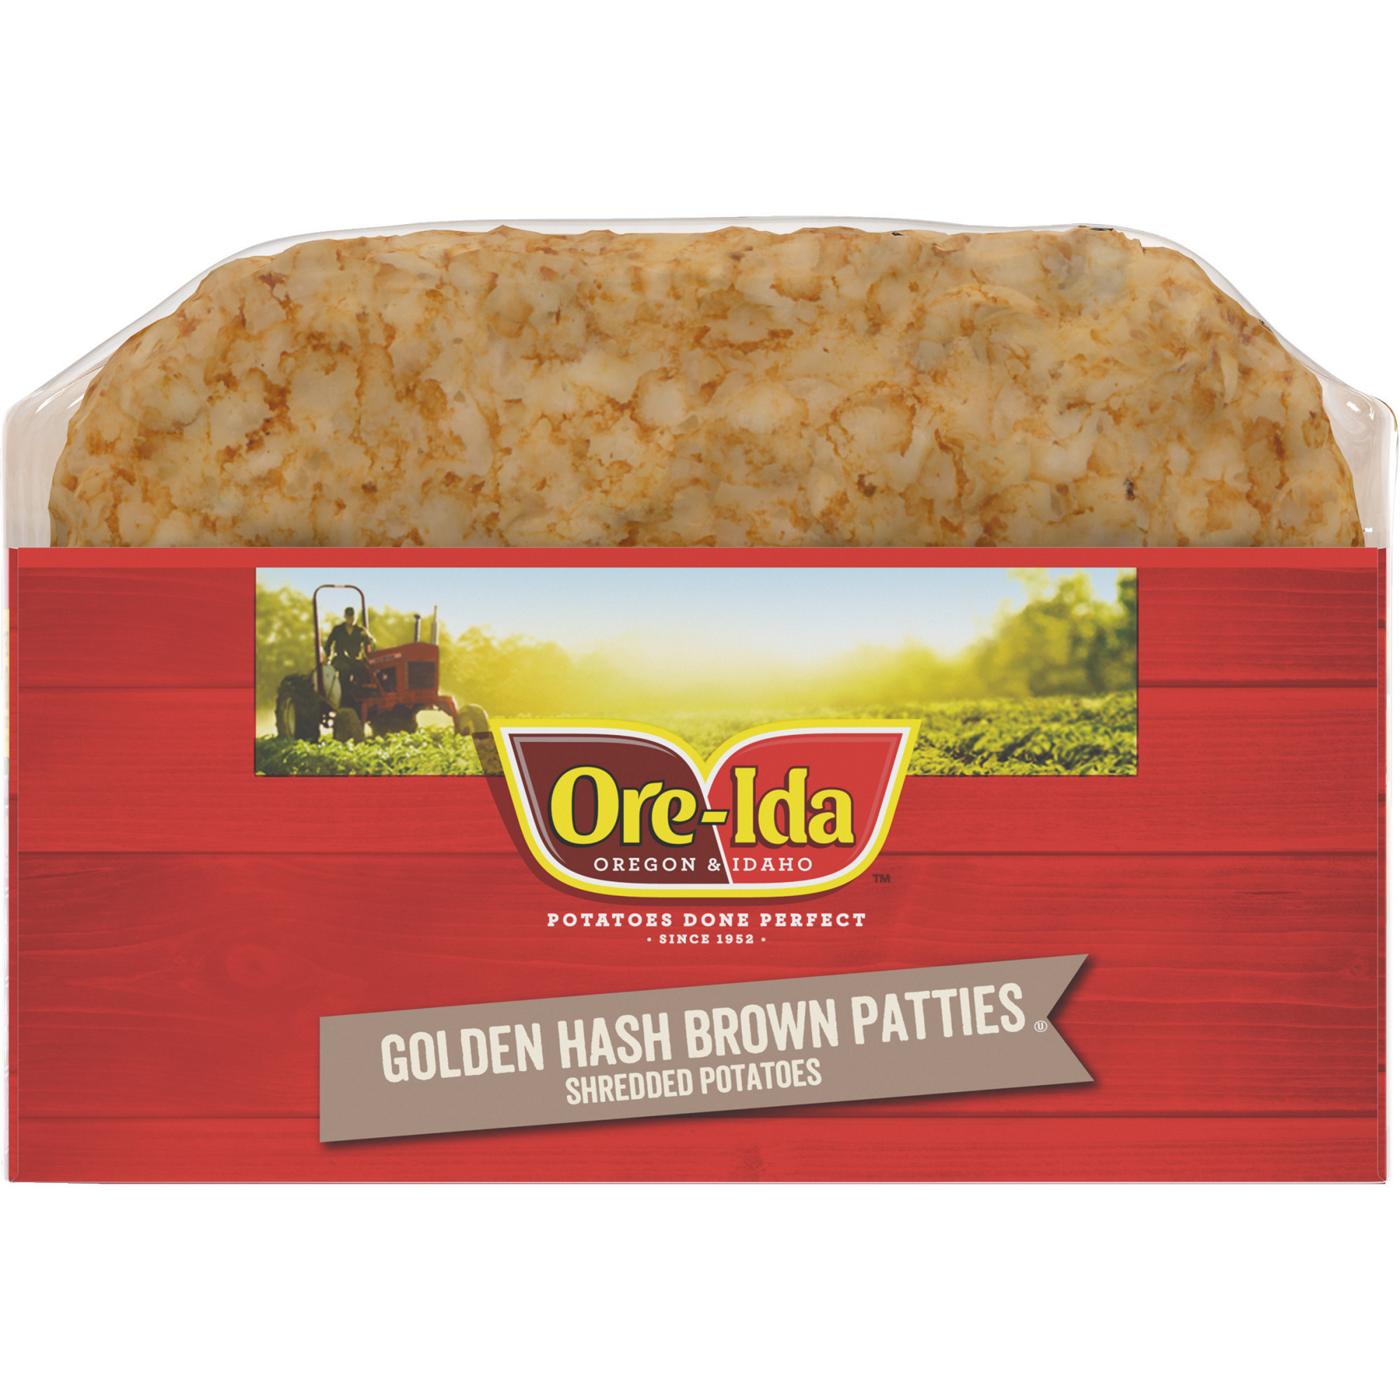 Ore-Ida Frozen Golden Hash Brown Patties; image 5 of 5